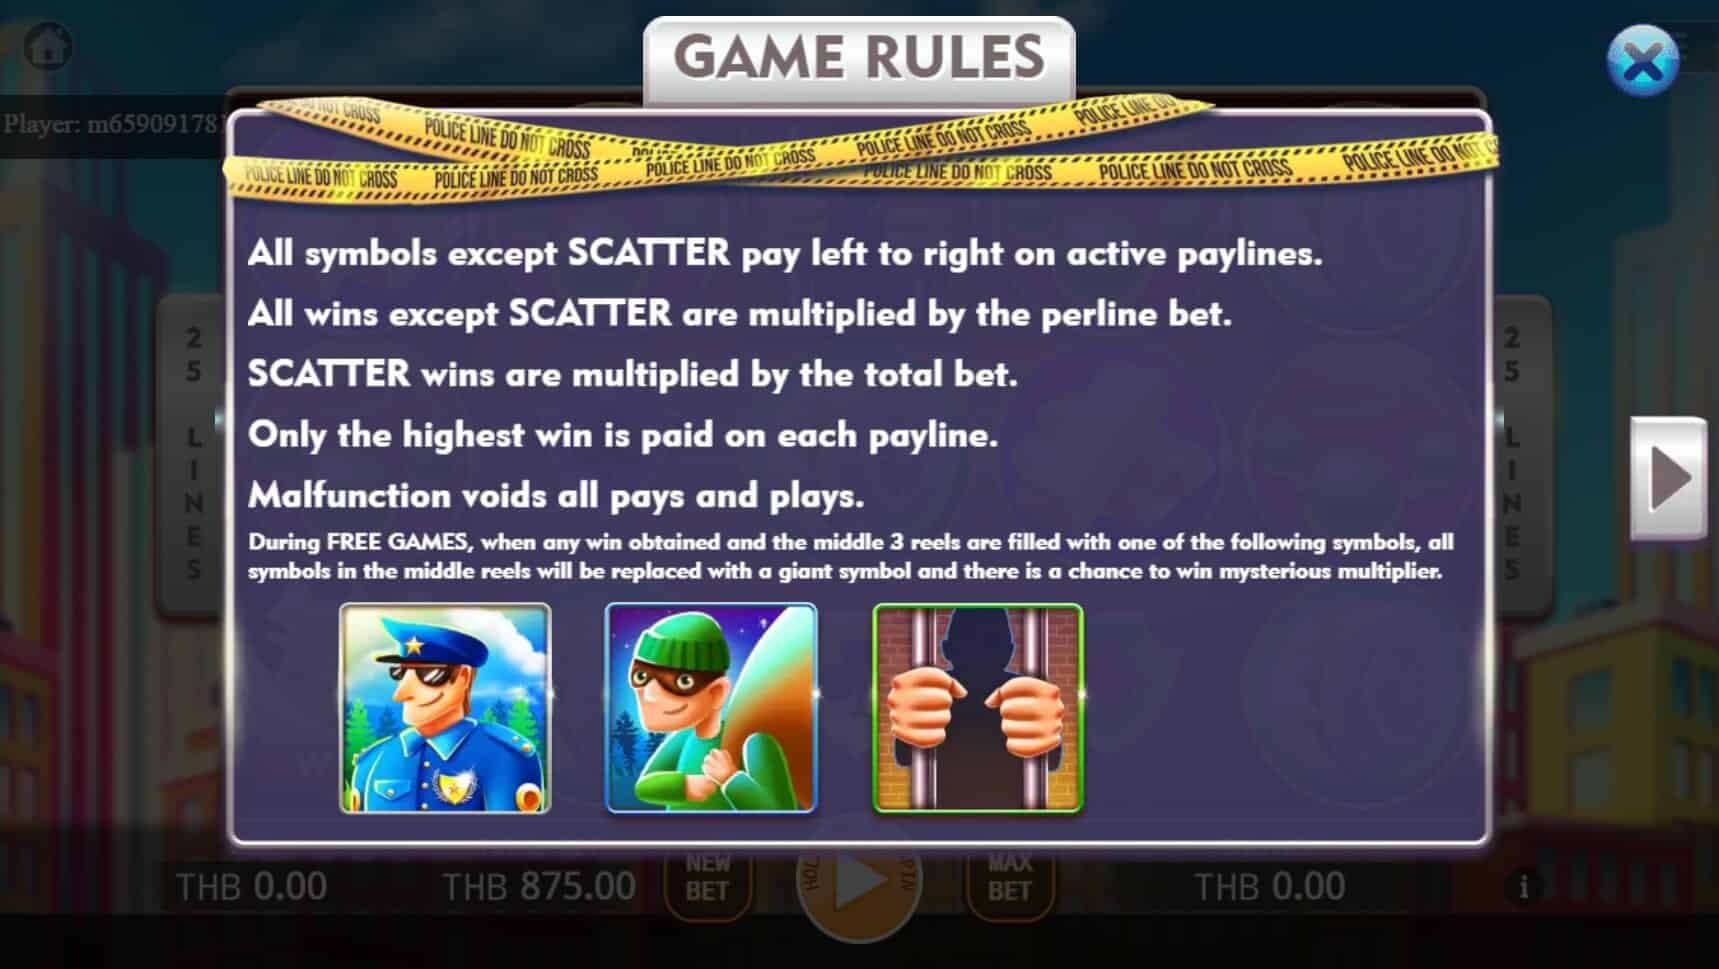 Catch The Thief สล็อต เว็บตรง ไม่ผ่านเอเย่นต์ ค่าย KA Gaming โจ๊กเกอร์ 888